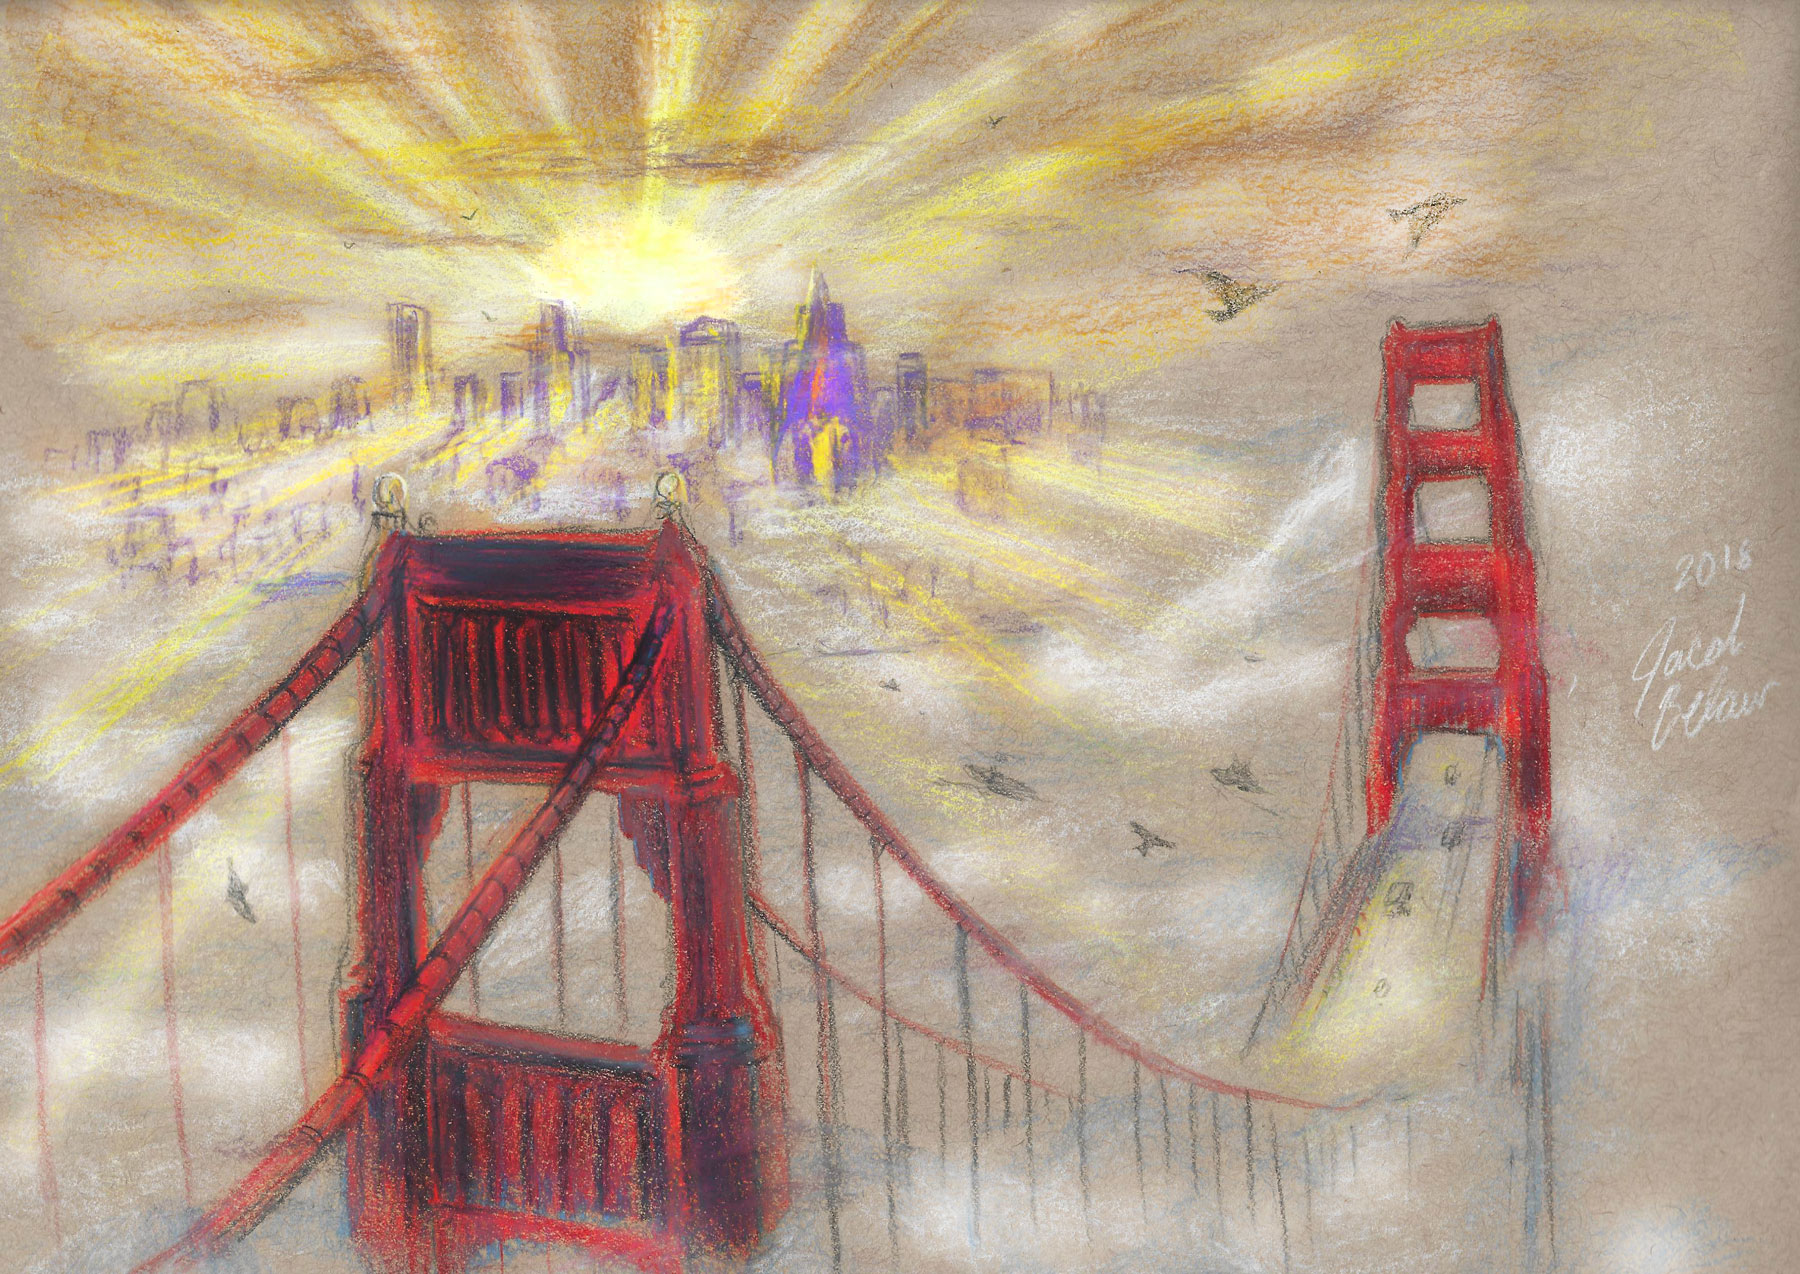 Morning on the Golden Gate Bridge